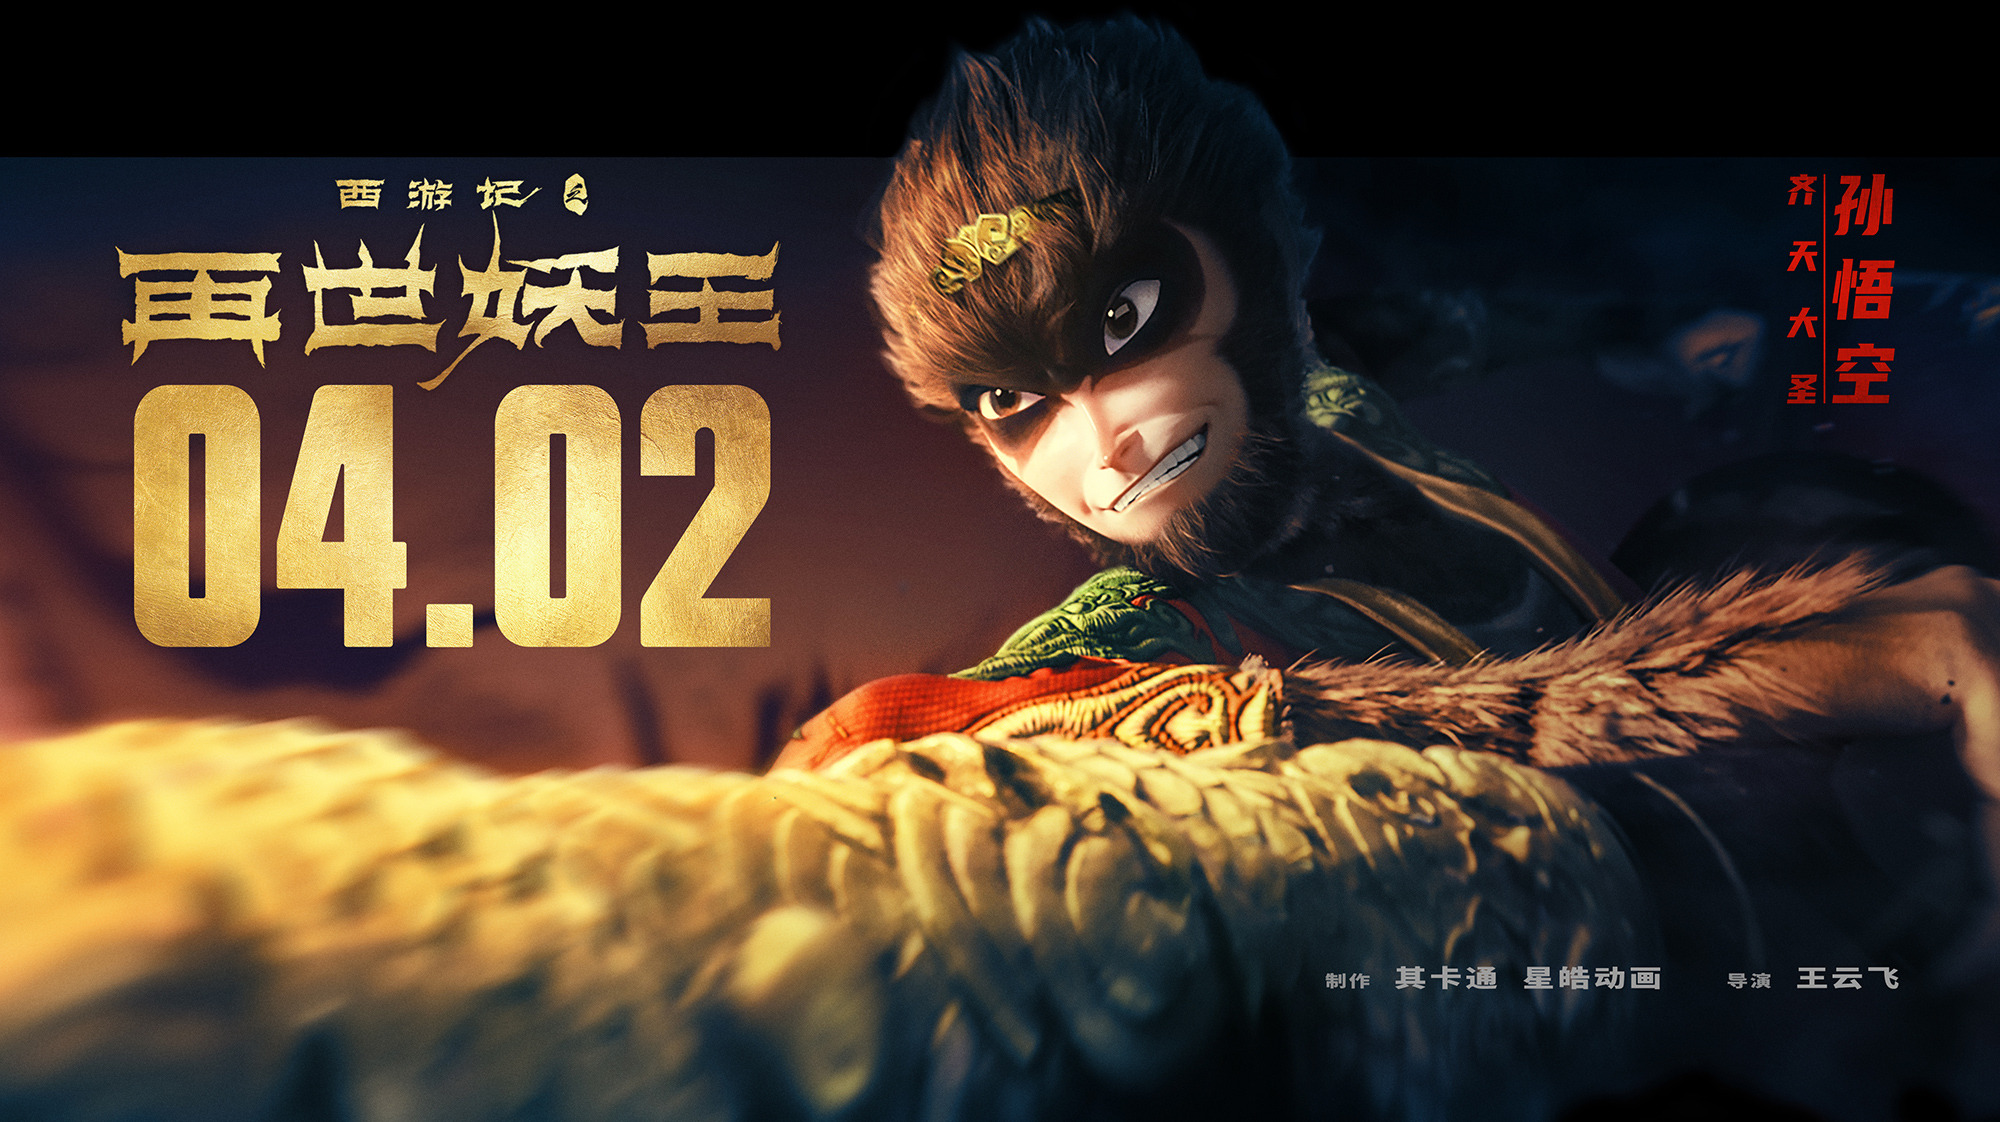 Mega Sized Movie Poster Image for Xi You Ji Zhi Zai Shi Yao Wang (#16 of 21)